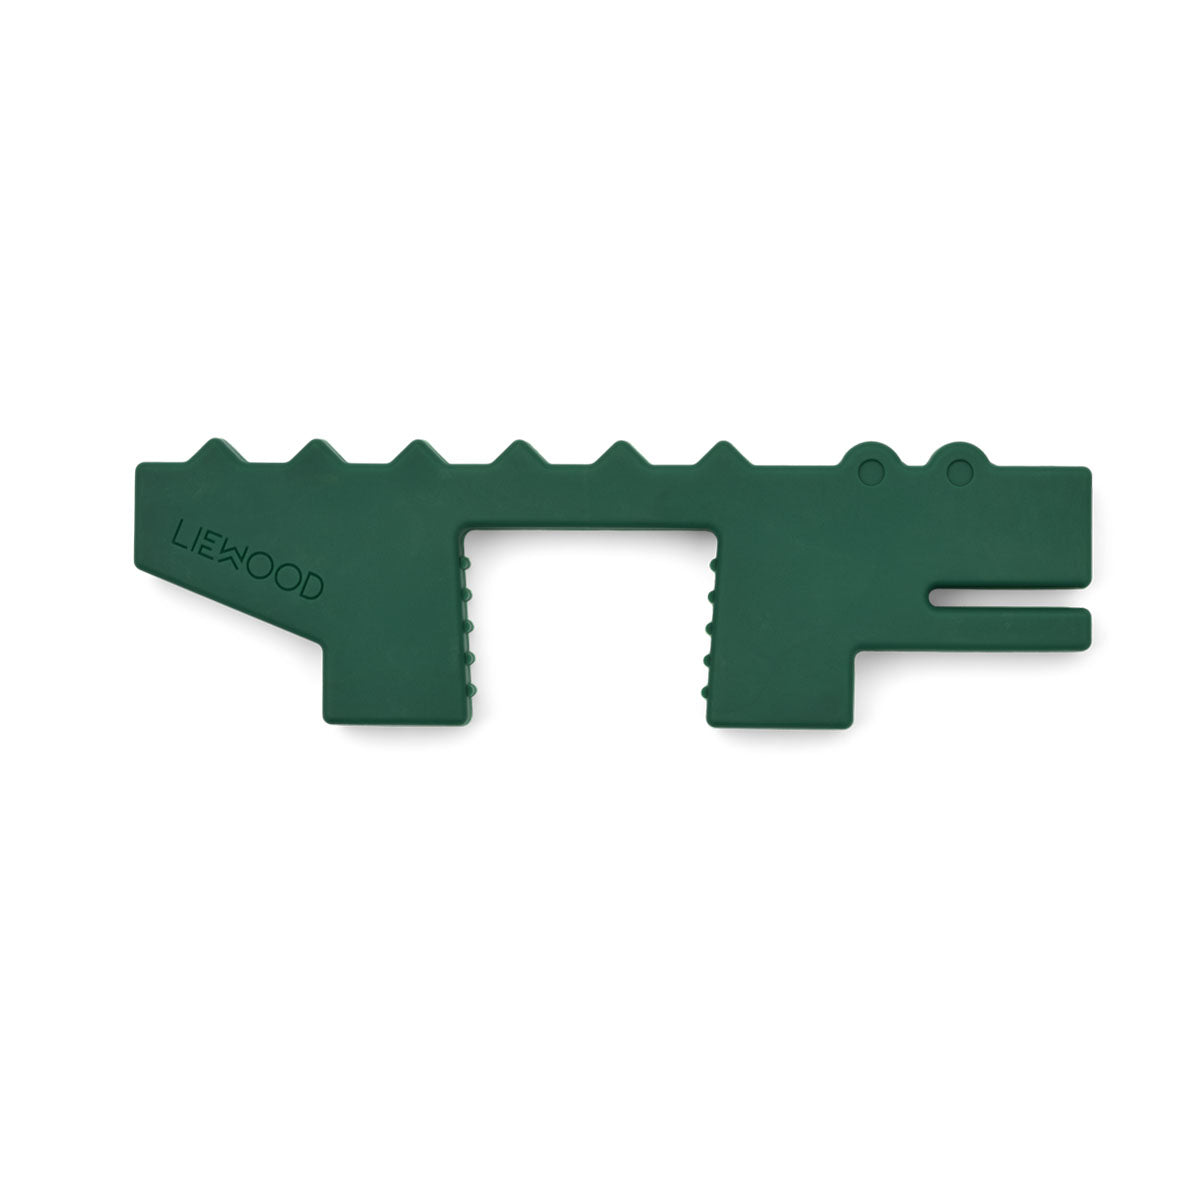 Gebruik deze bjarke deurstopper 2-pack van Liewood voor het vastzetten of stoppen van de deur. De flexibele set bestaat uit een krokodil en walvis in de variant whale blue/garden green. VanZus